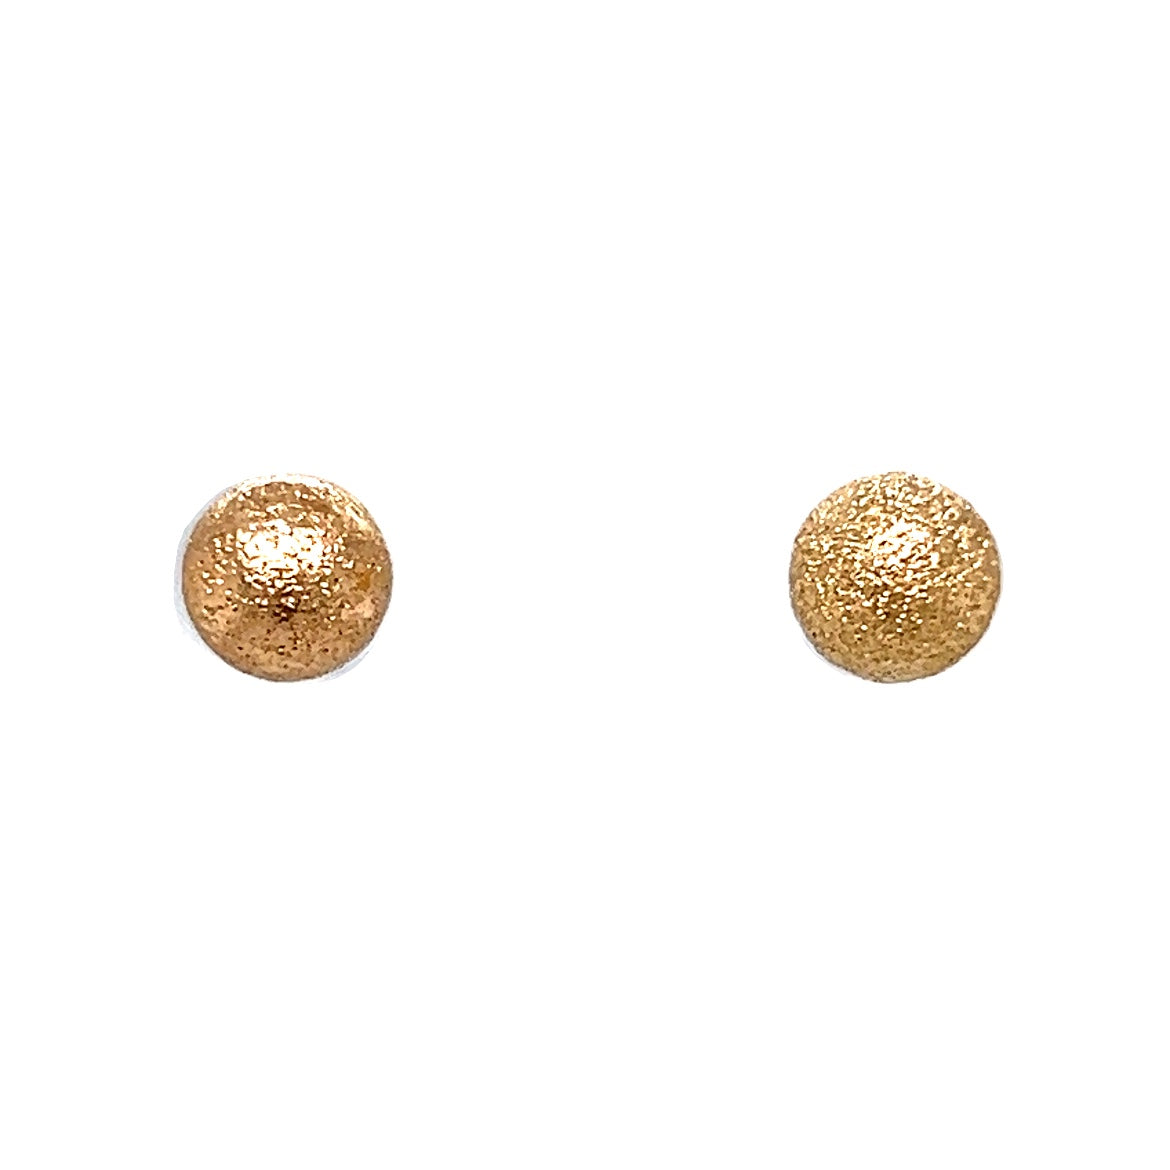 Russia Ethiopia Earrings Gold Metal Statement Earring Ears Studs Women's  Jewelry | eBay